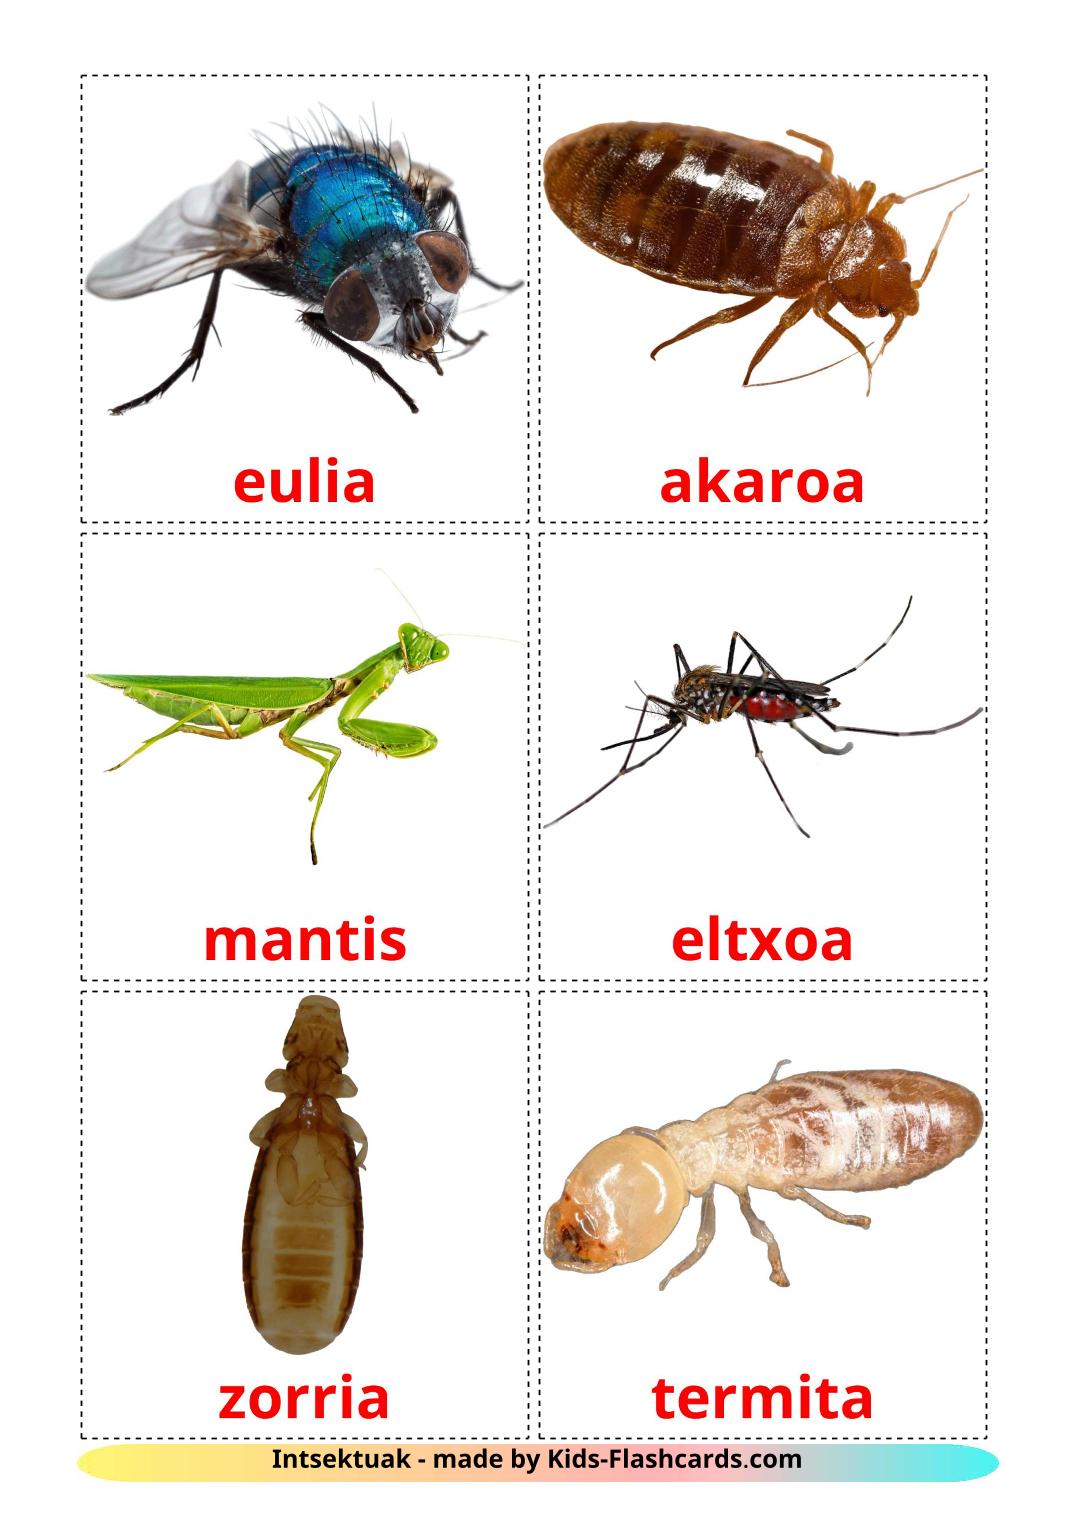 Les Insectes - 23 Flashcards basque imprimables gratuitement